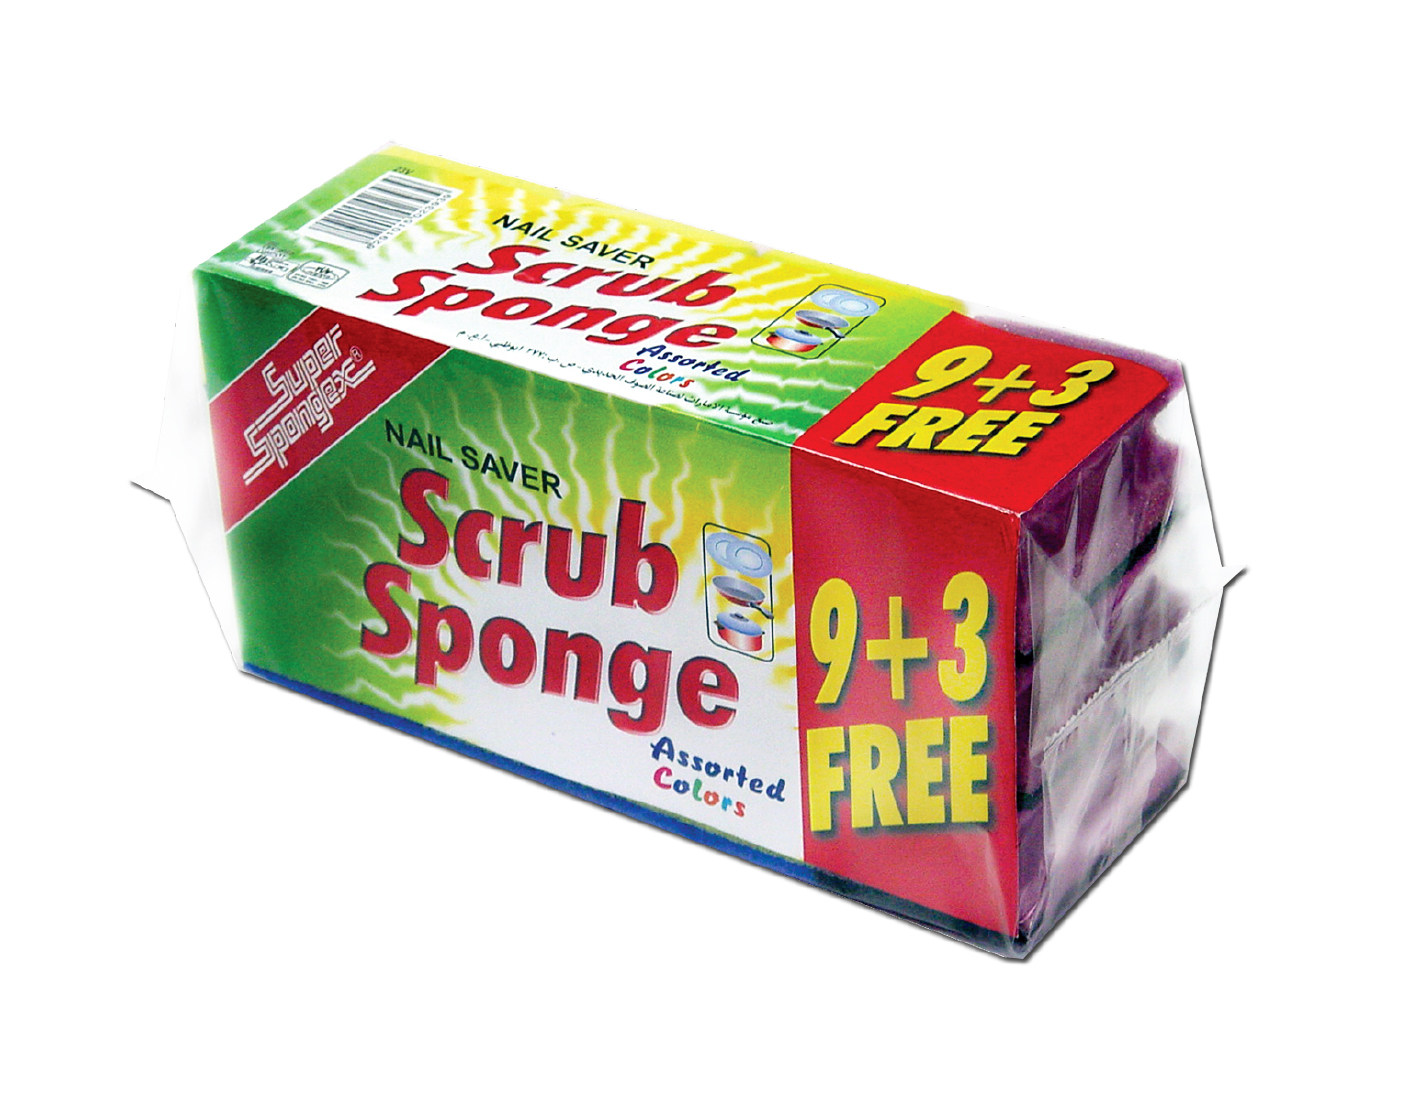 Grooved Sponge 9 + 3 Free